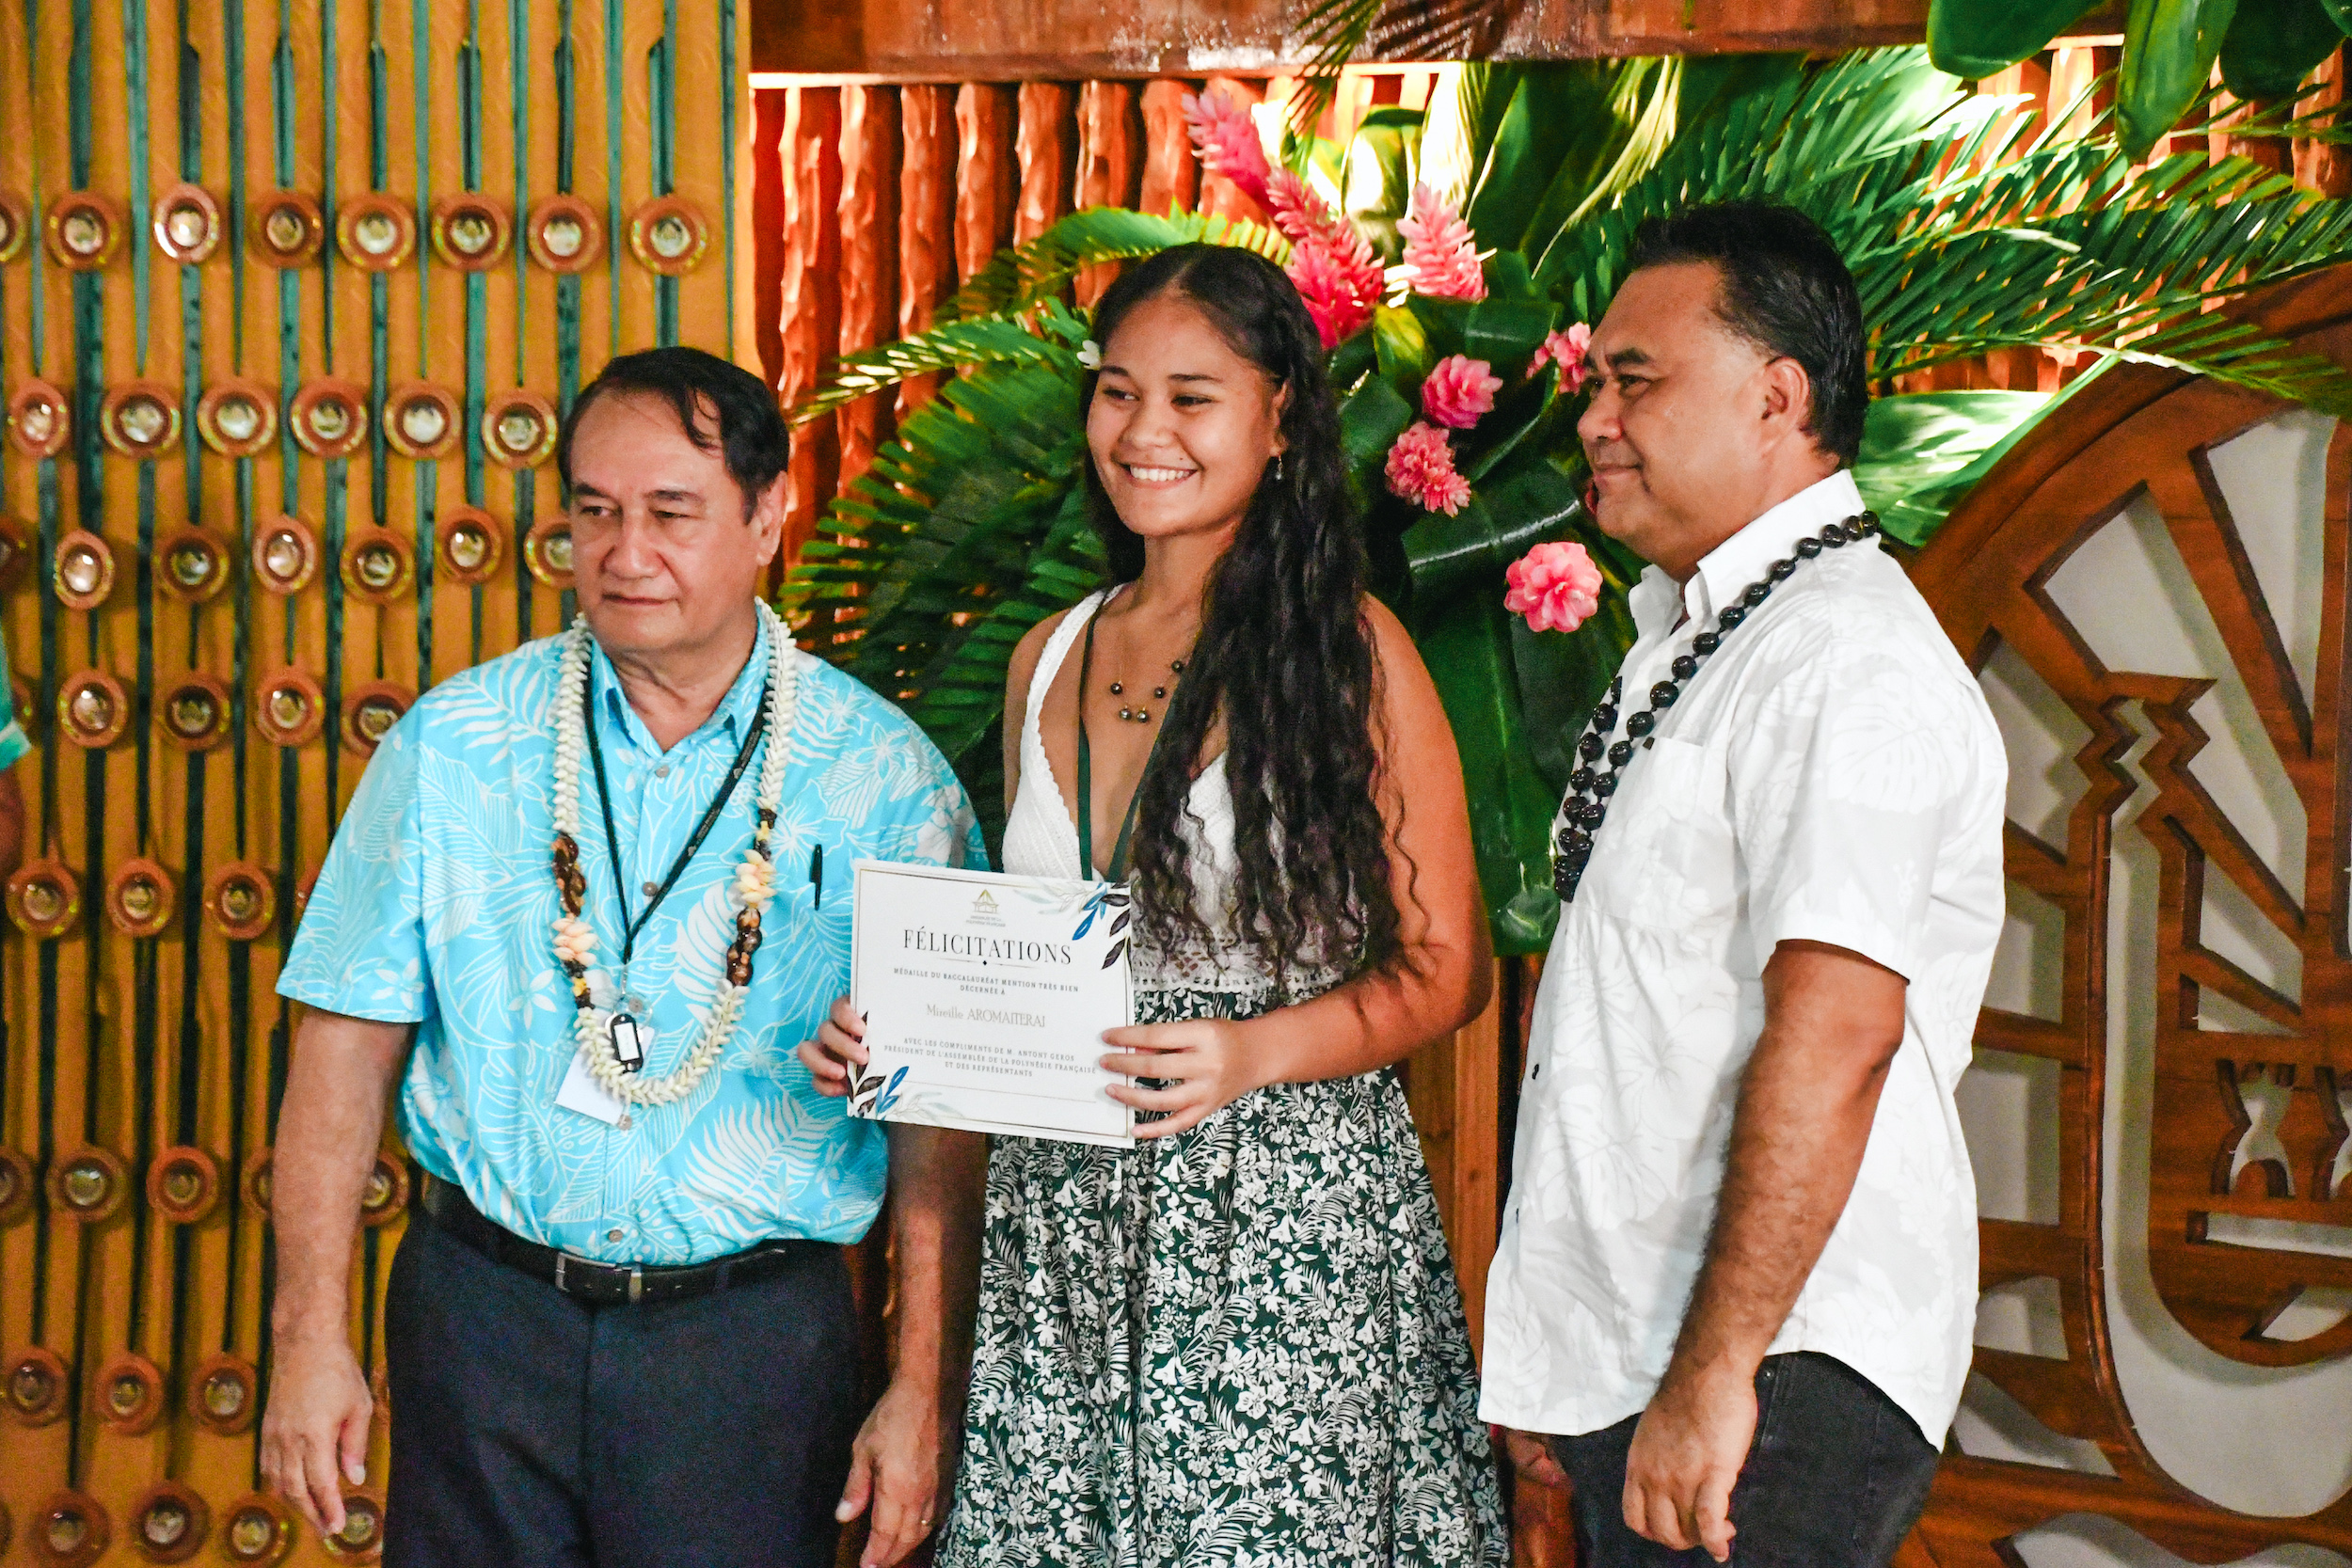 Le Pays a tenu à féliciter en personne ces nouveaux bacheliers, qui témoignent de l'excellence du système éducatif polynésien.